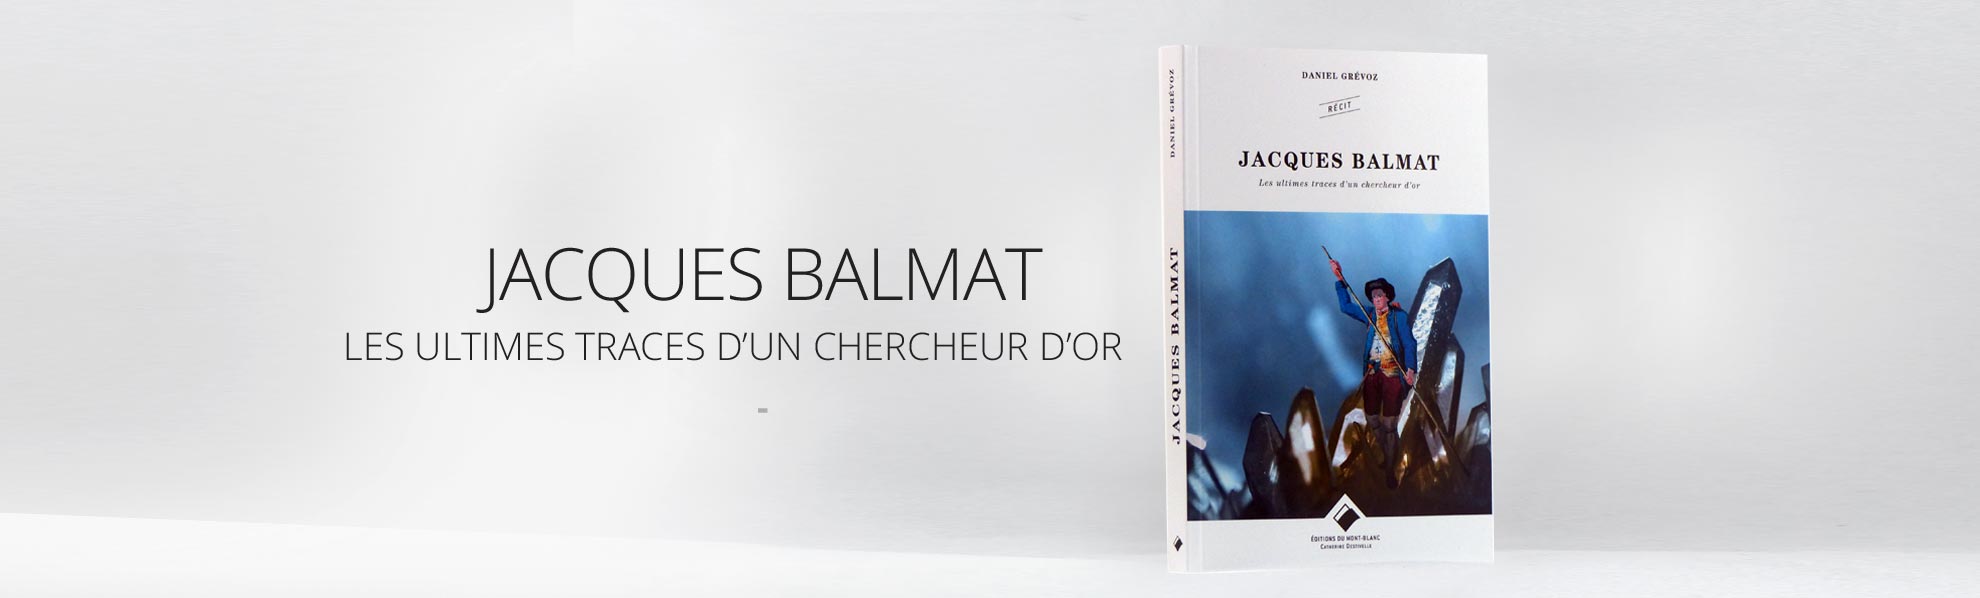 Jacques Balmat